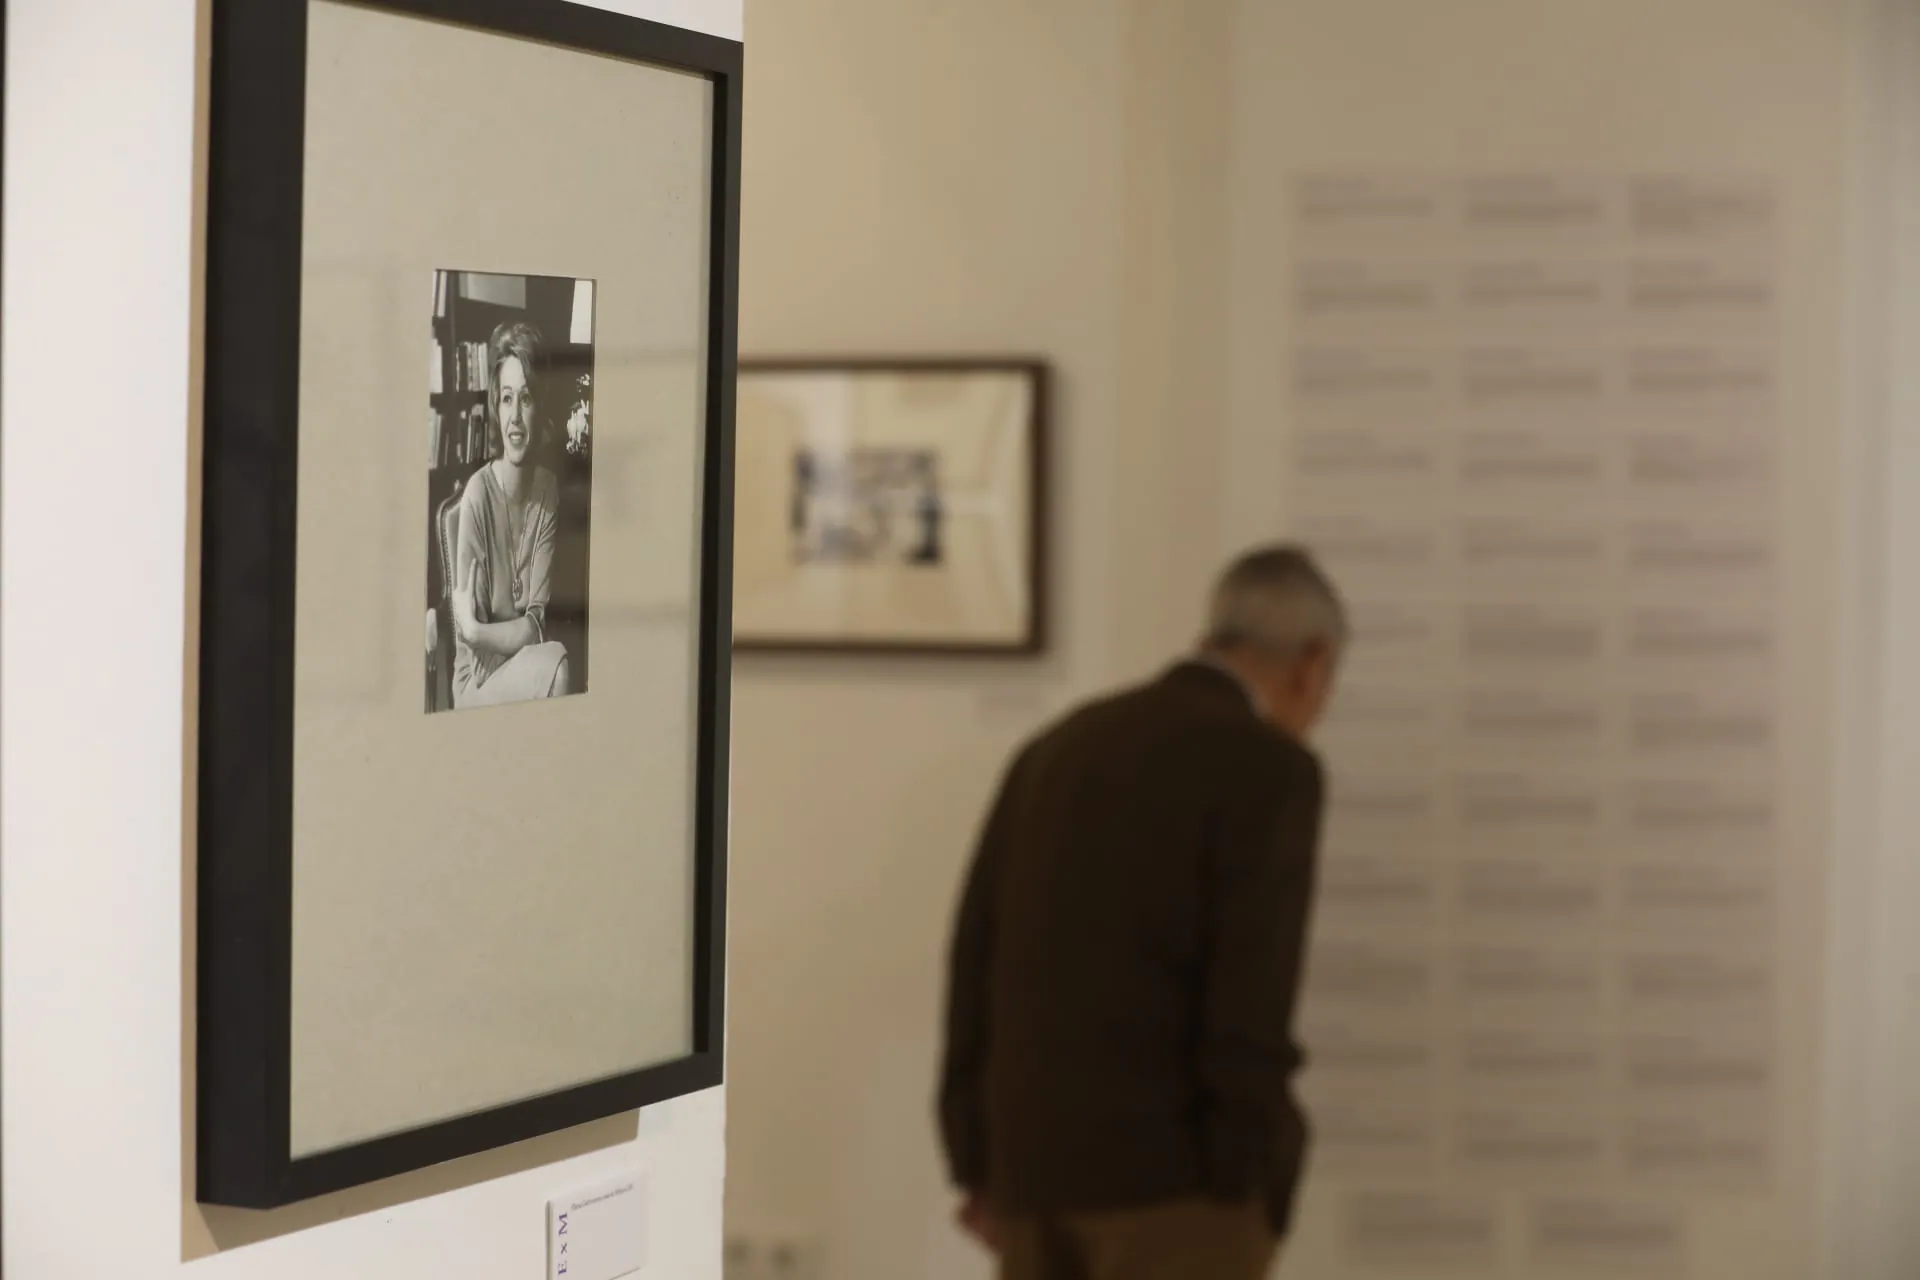 Fotos: La Fundación Cajasol inaugura la exposición “Escrito por mujeres. Escritoras del Siglo XX en español”